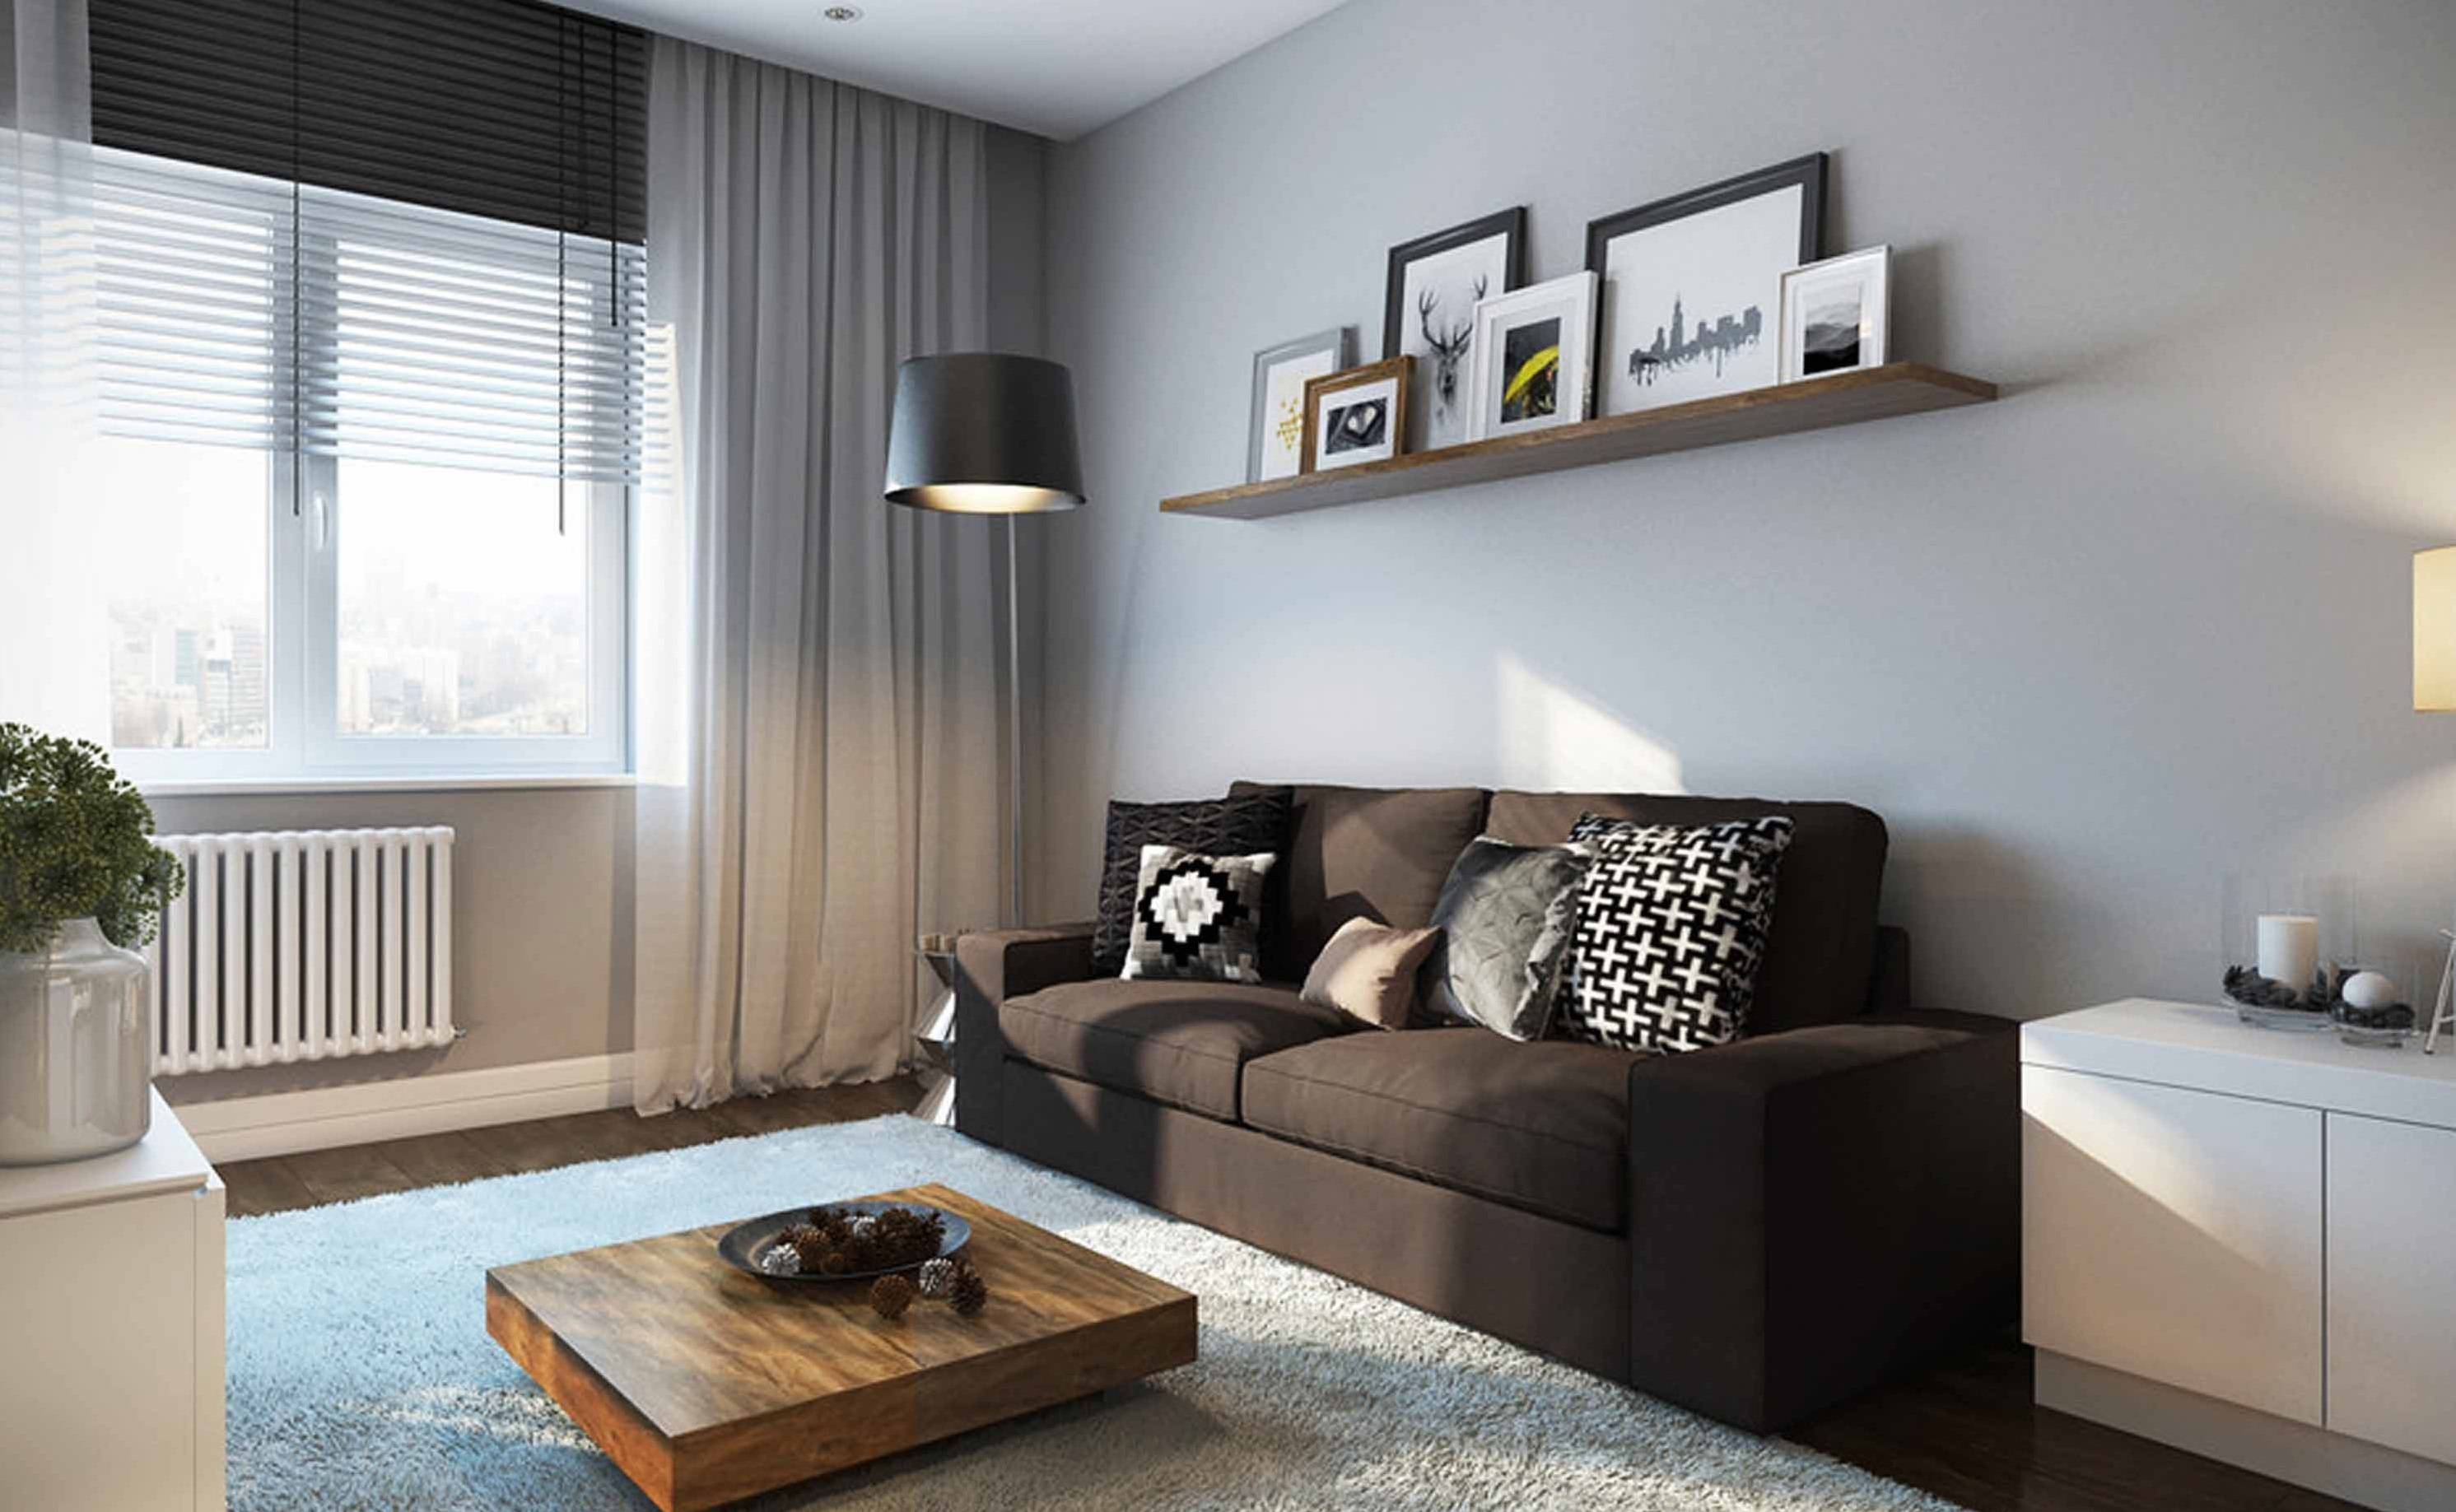 Как обустроить однокомнатную квартиру, как функционально обставить маленькую квартиру стильно и недорого